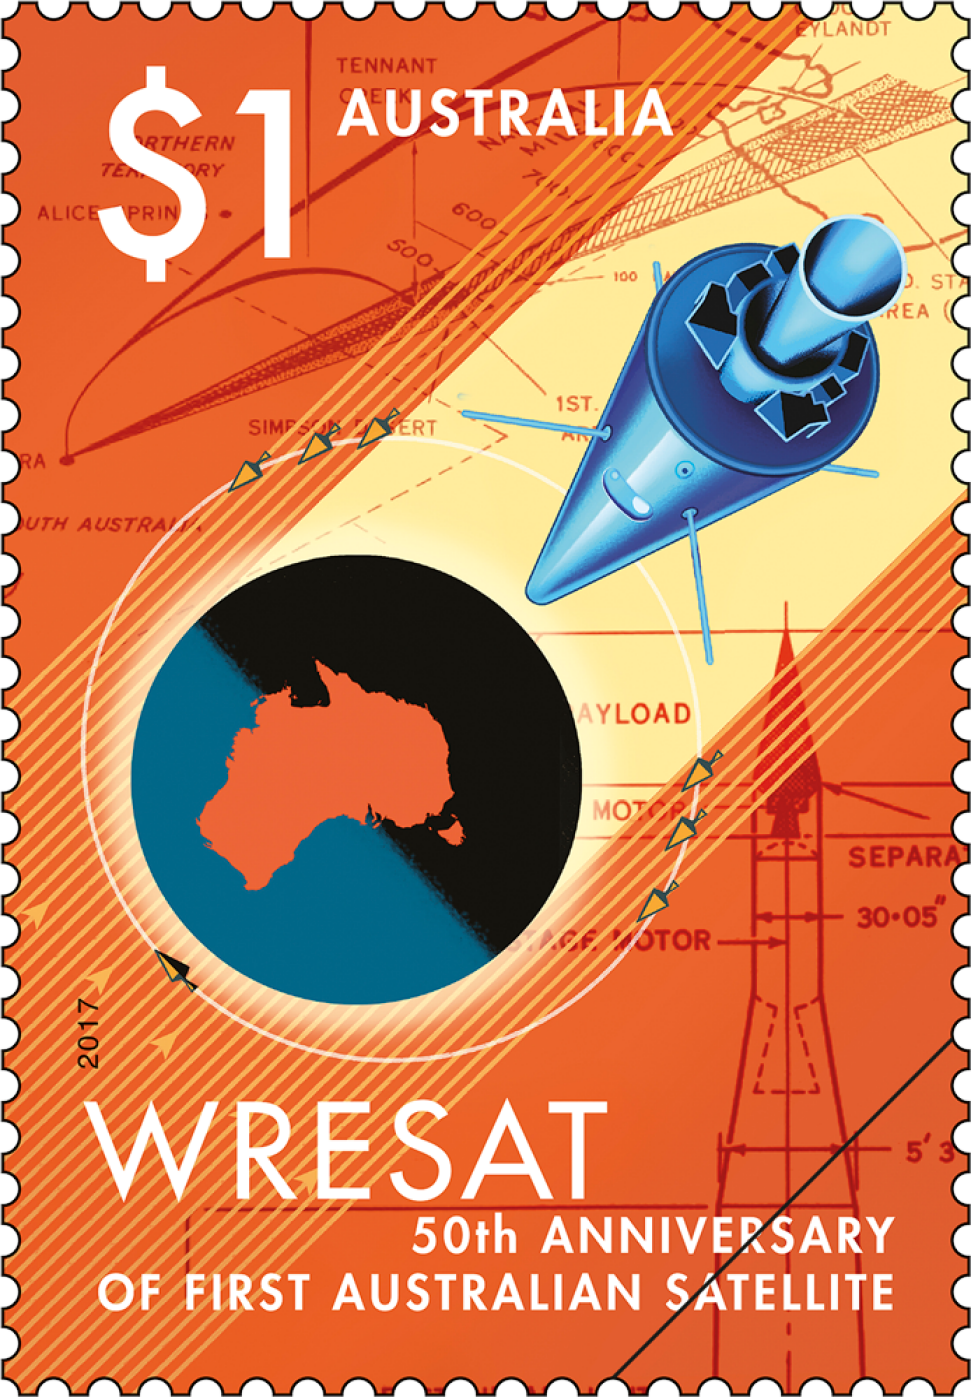 50th Anniversary of WRESAT